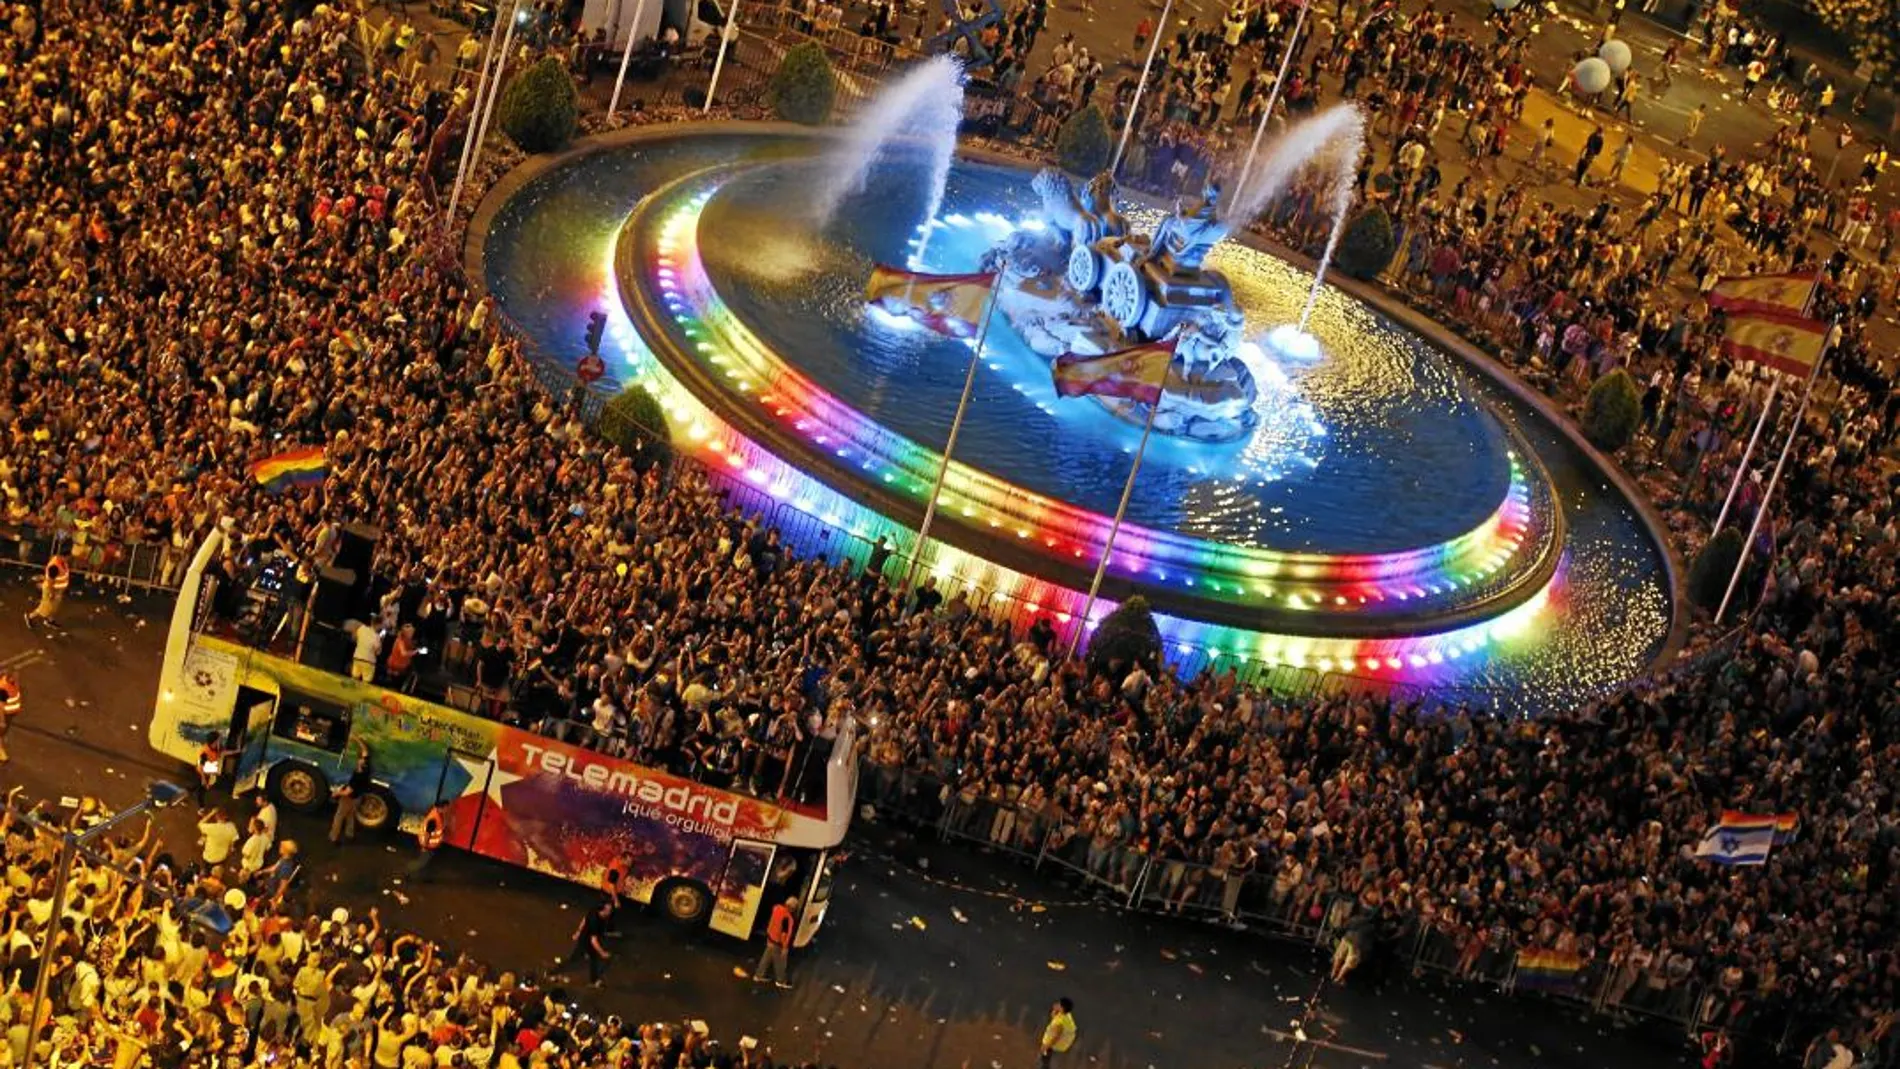 Este año, además de la plaza de Cibeles, la fuente de Neptuno también se iluminará con los colores de la bandera arcoíris durante las fiestas del Orgullo Gay